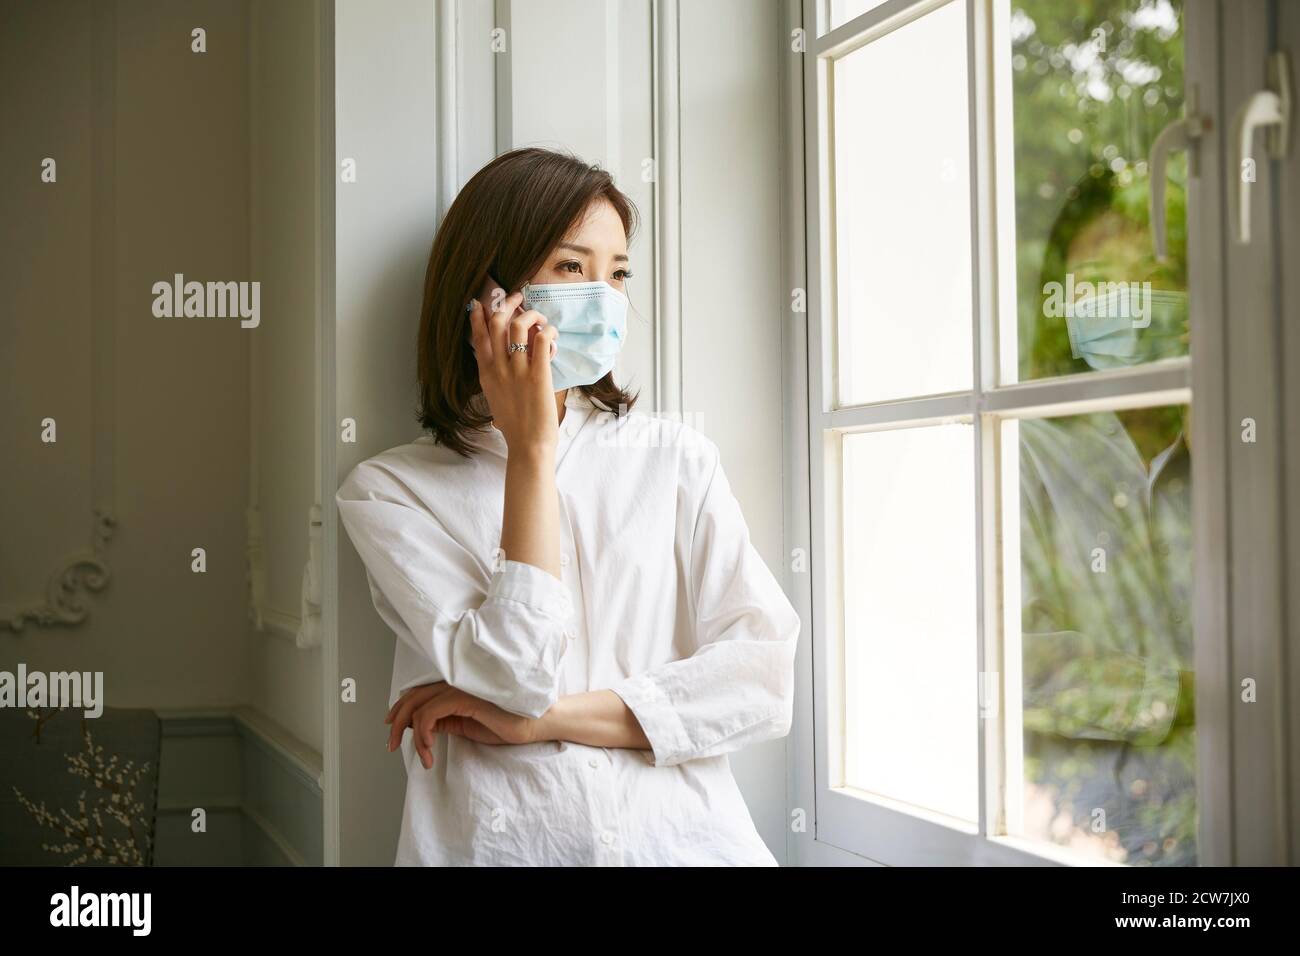 Junge asiatische Frau in Isolation trägt Maske am Fenster stehen Telefonieren Stockfoto